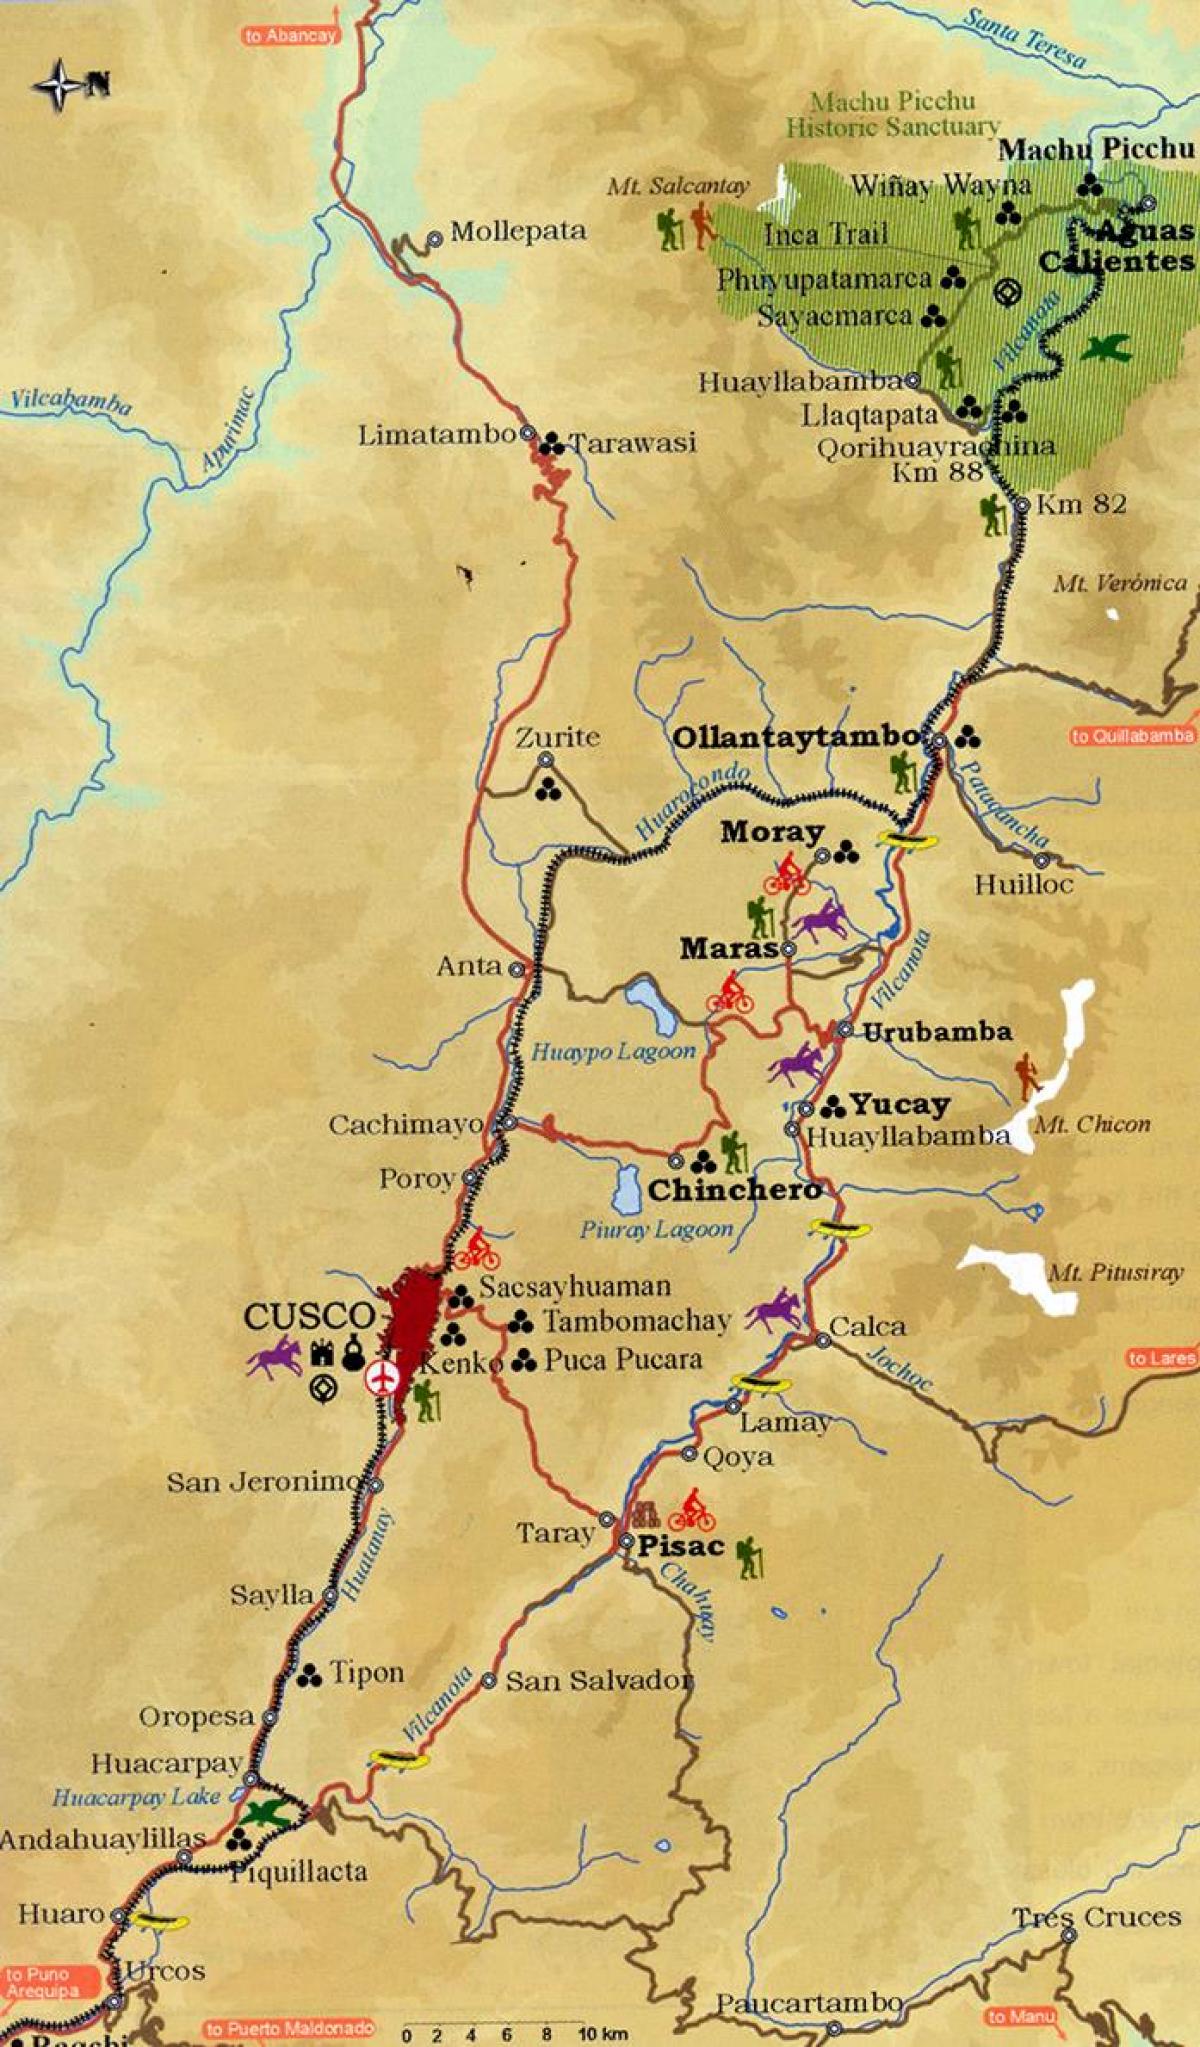 zemljevid svete doline cusco Peru